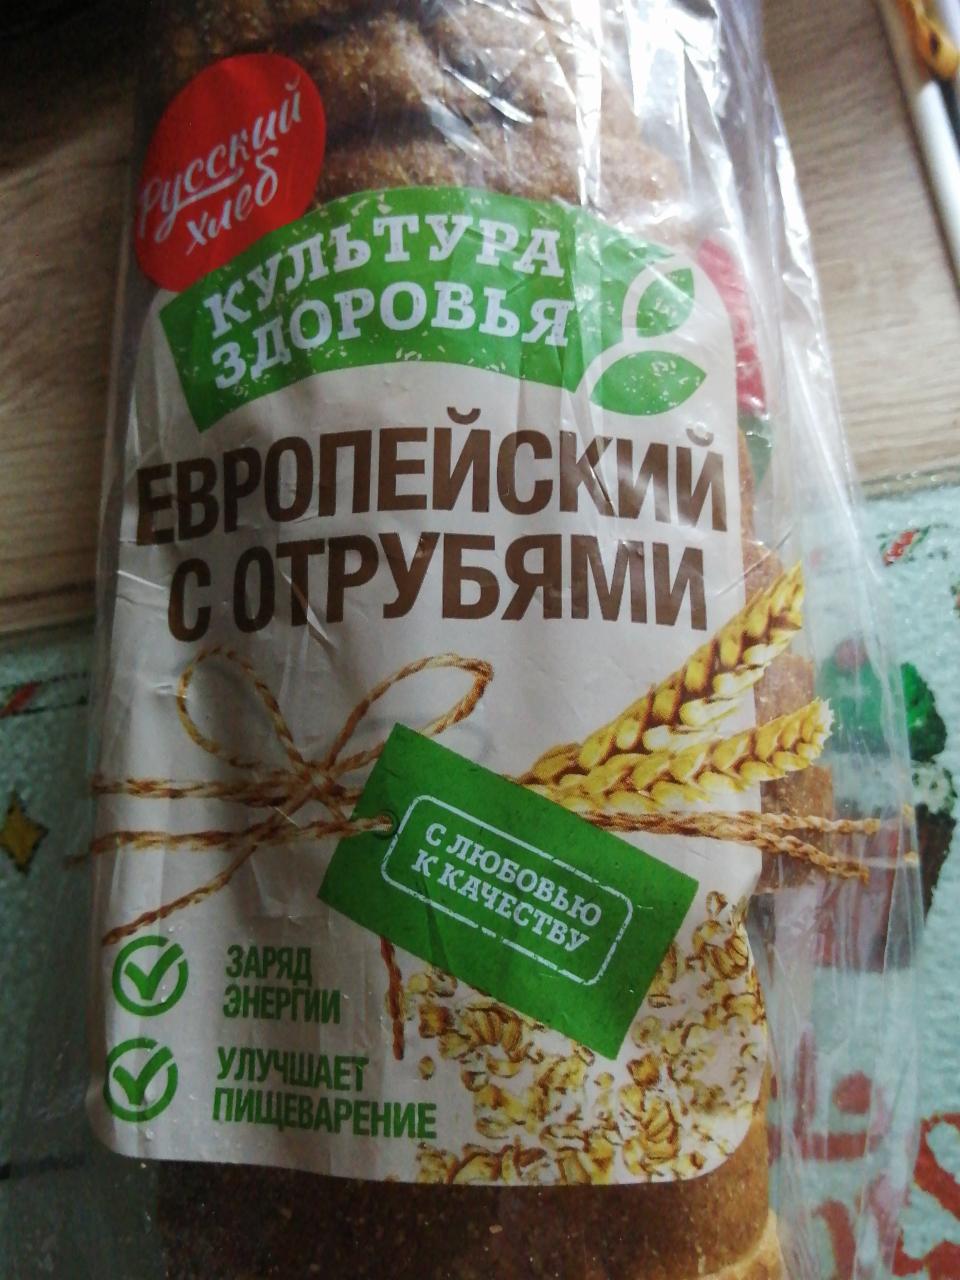 Фото - Европейский с отрубями Русский хлеб